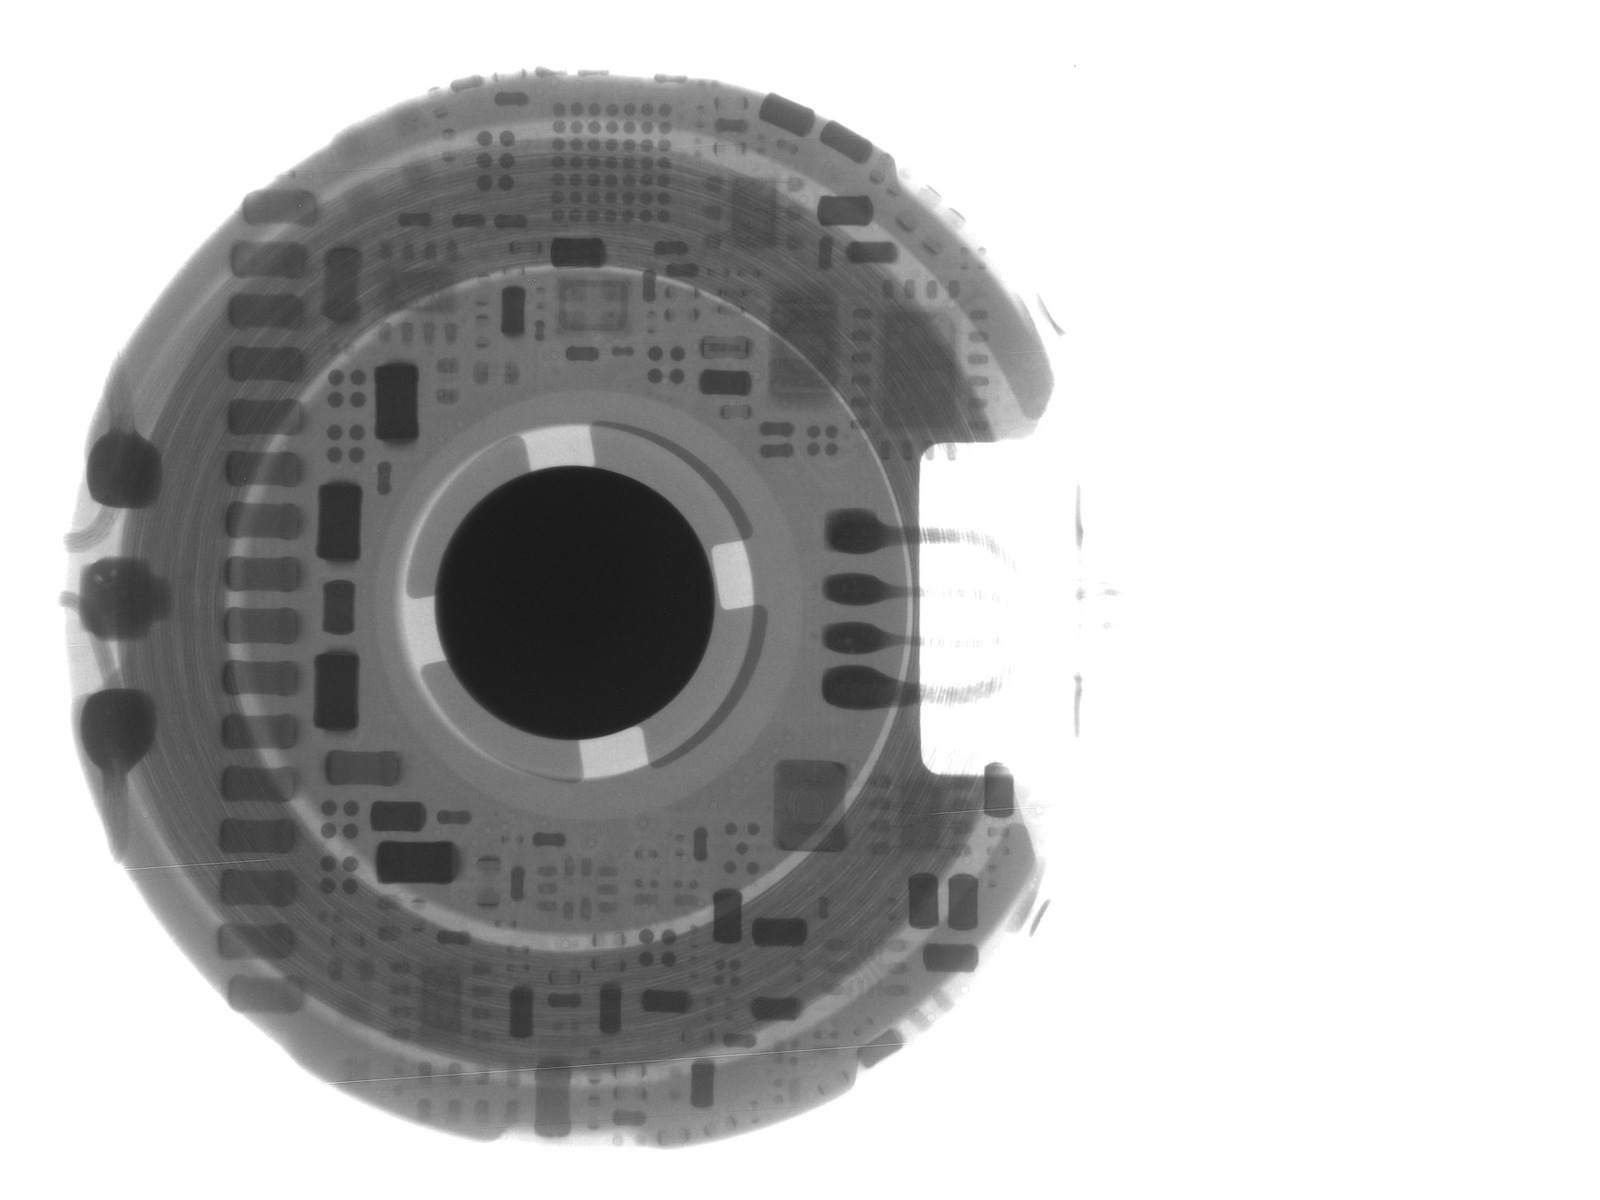 chip S1 Apple Watch gescande röntgenfoto 2 - iDevice.ro